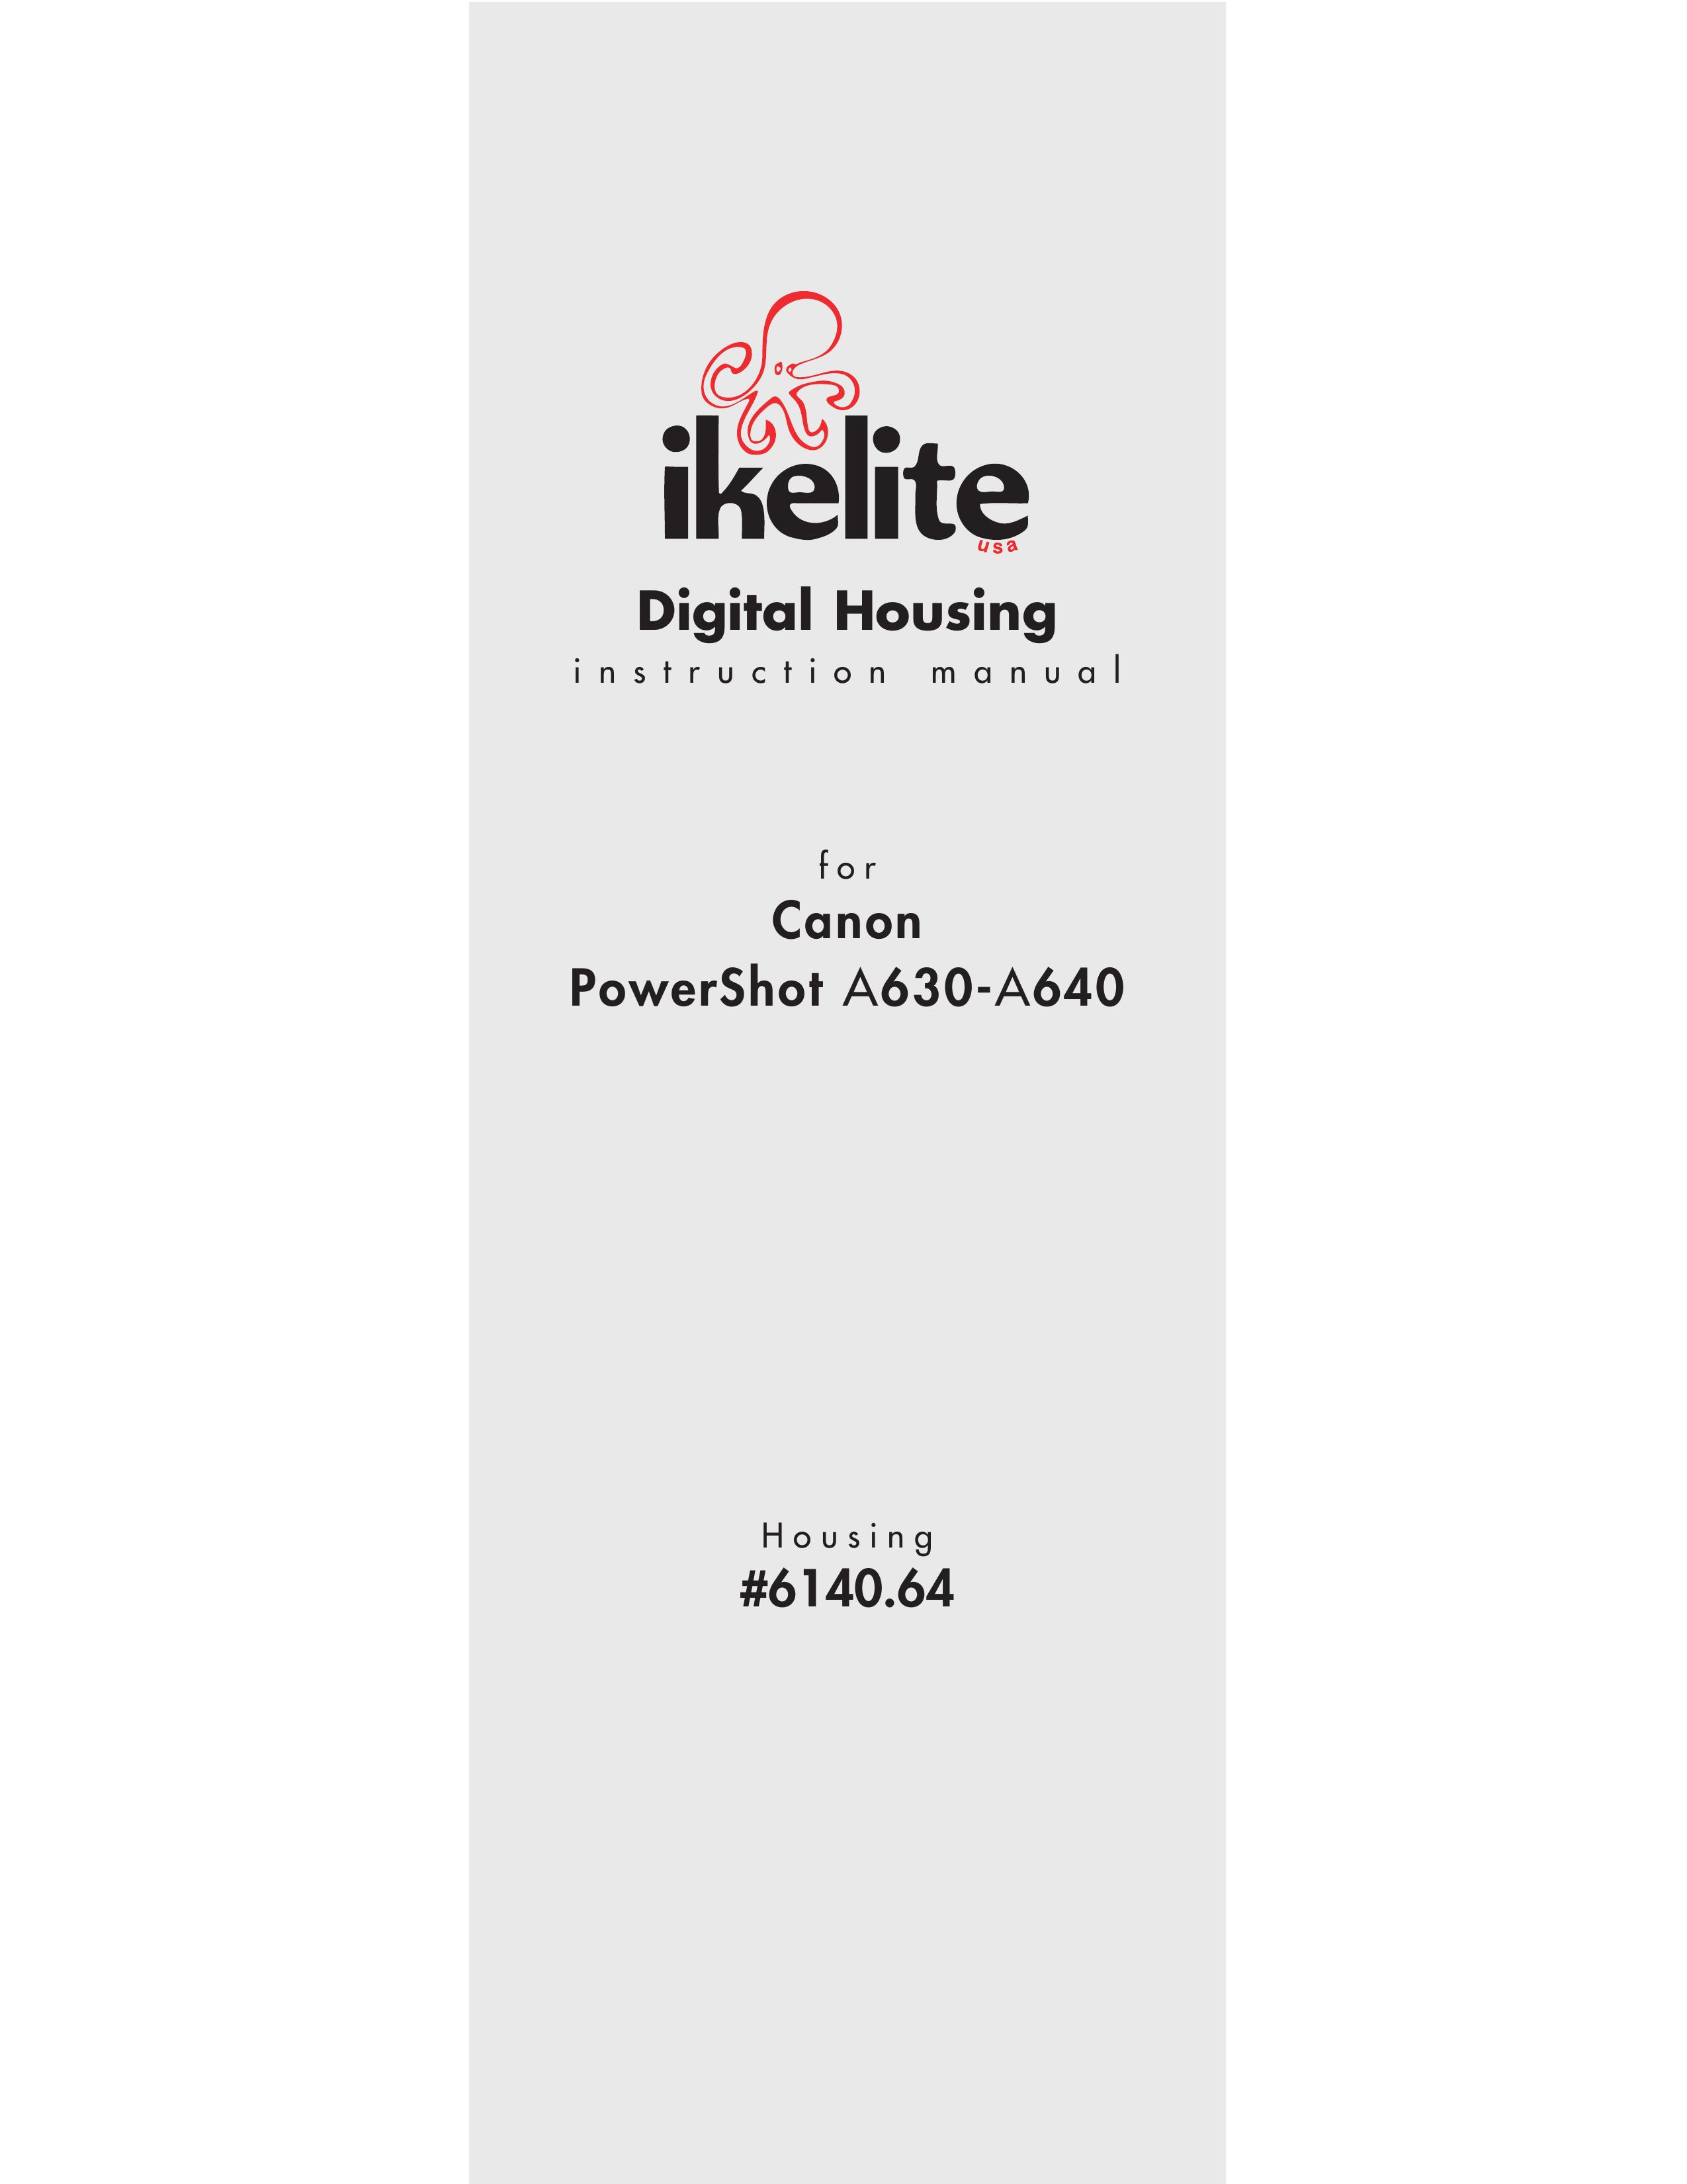 Ikelite A630 Digital Camera User Manual